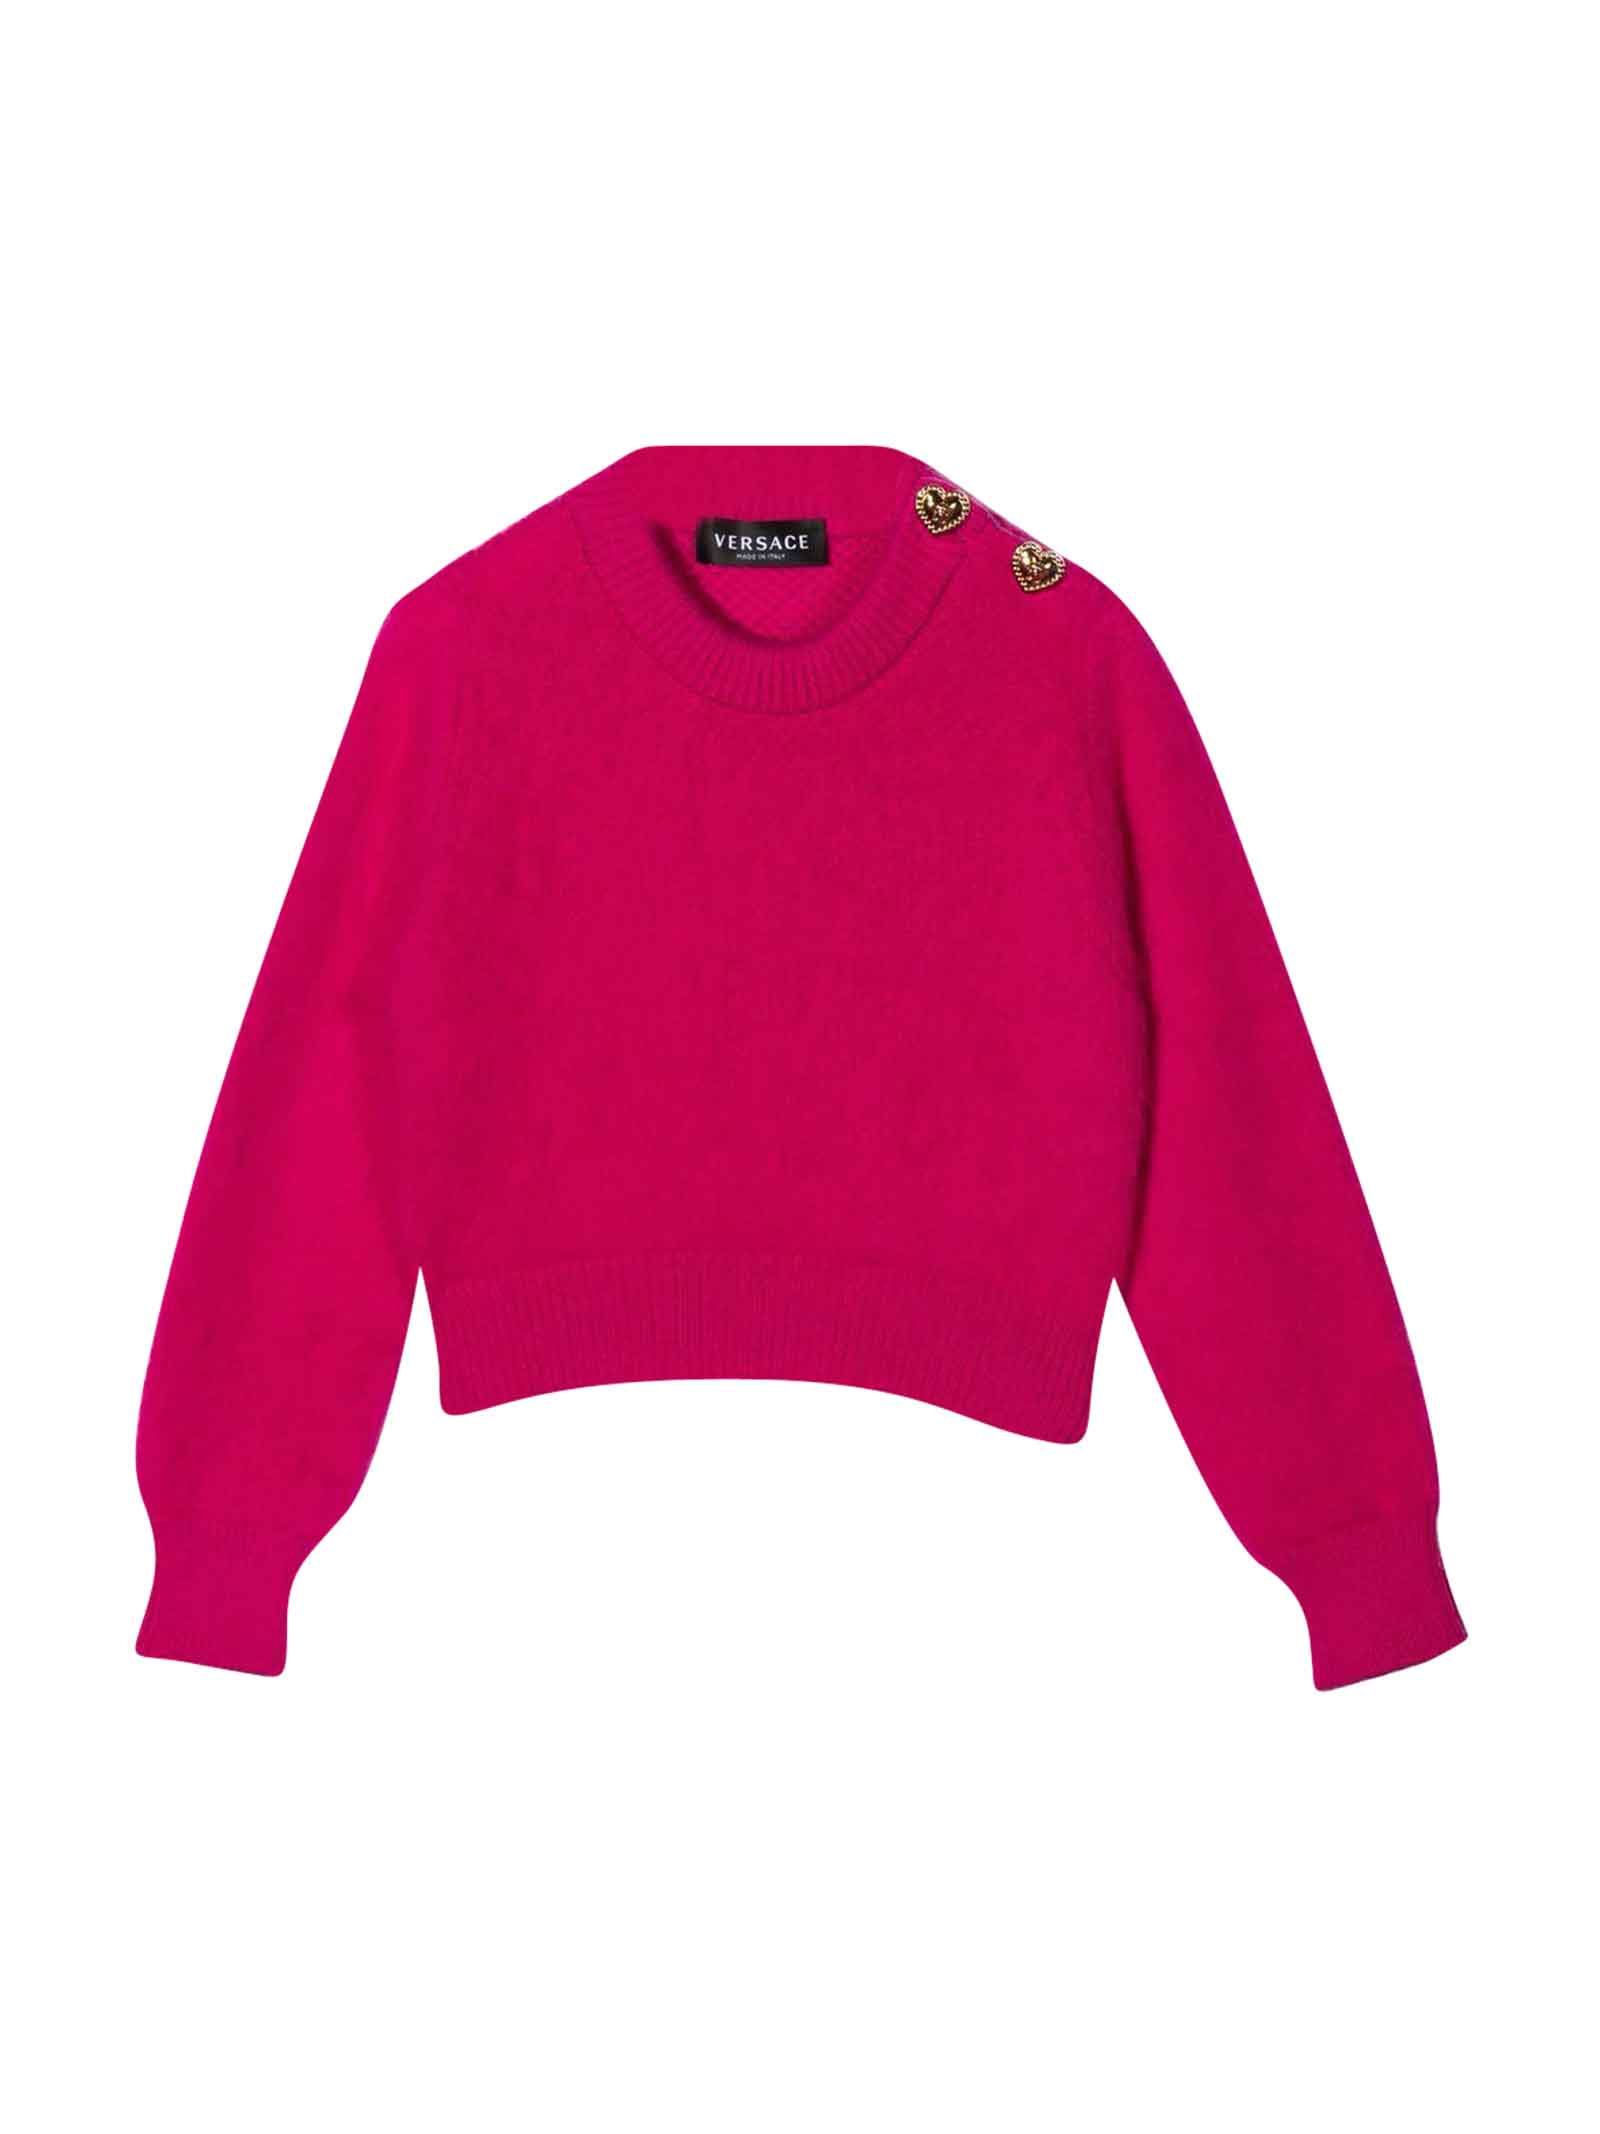 Versace Fuchsia Sweater Girl Kids